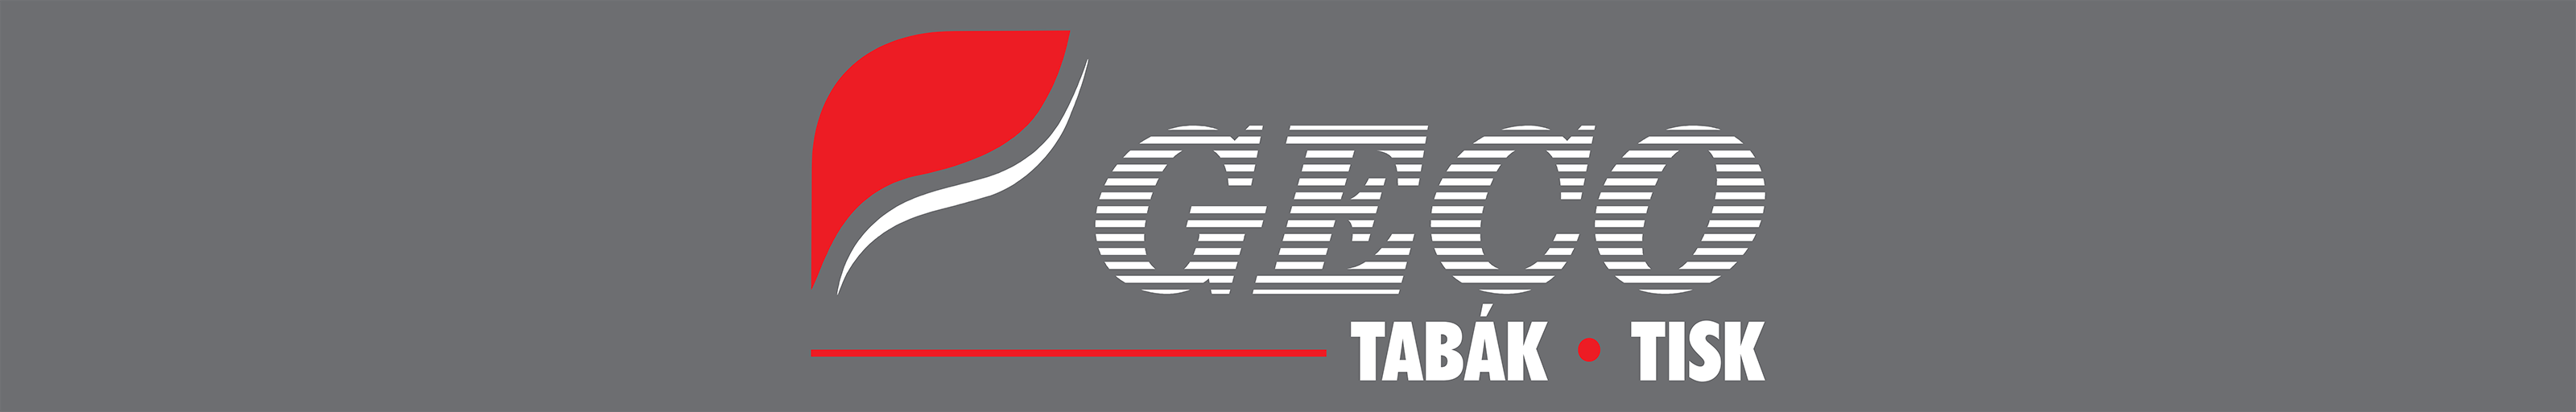 GECO Tabák - tisk